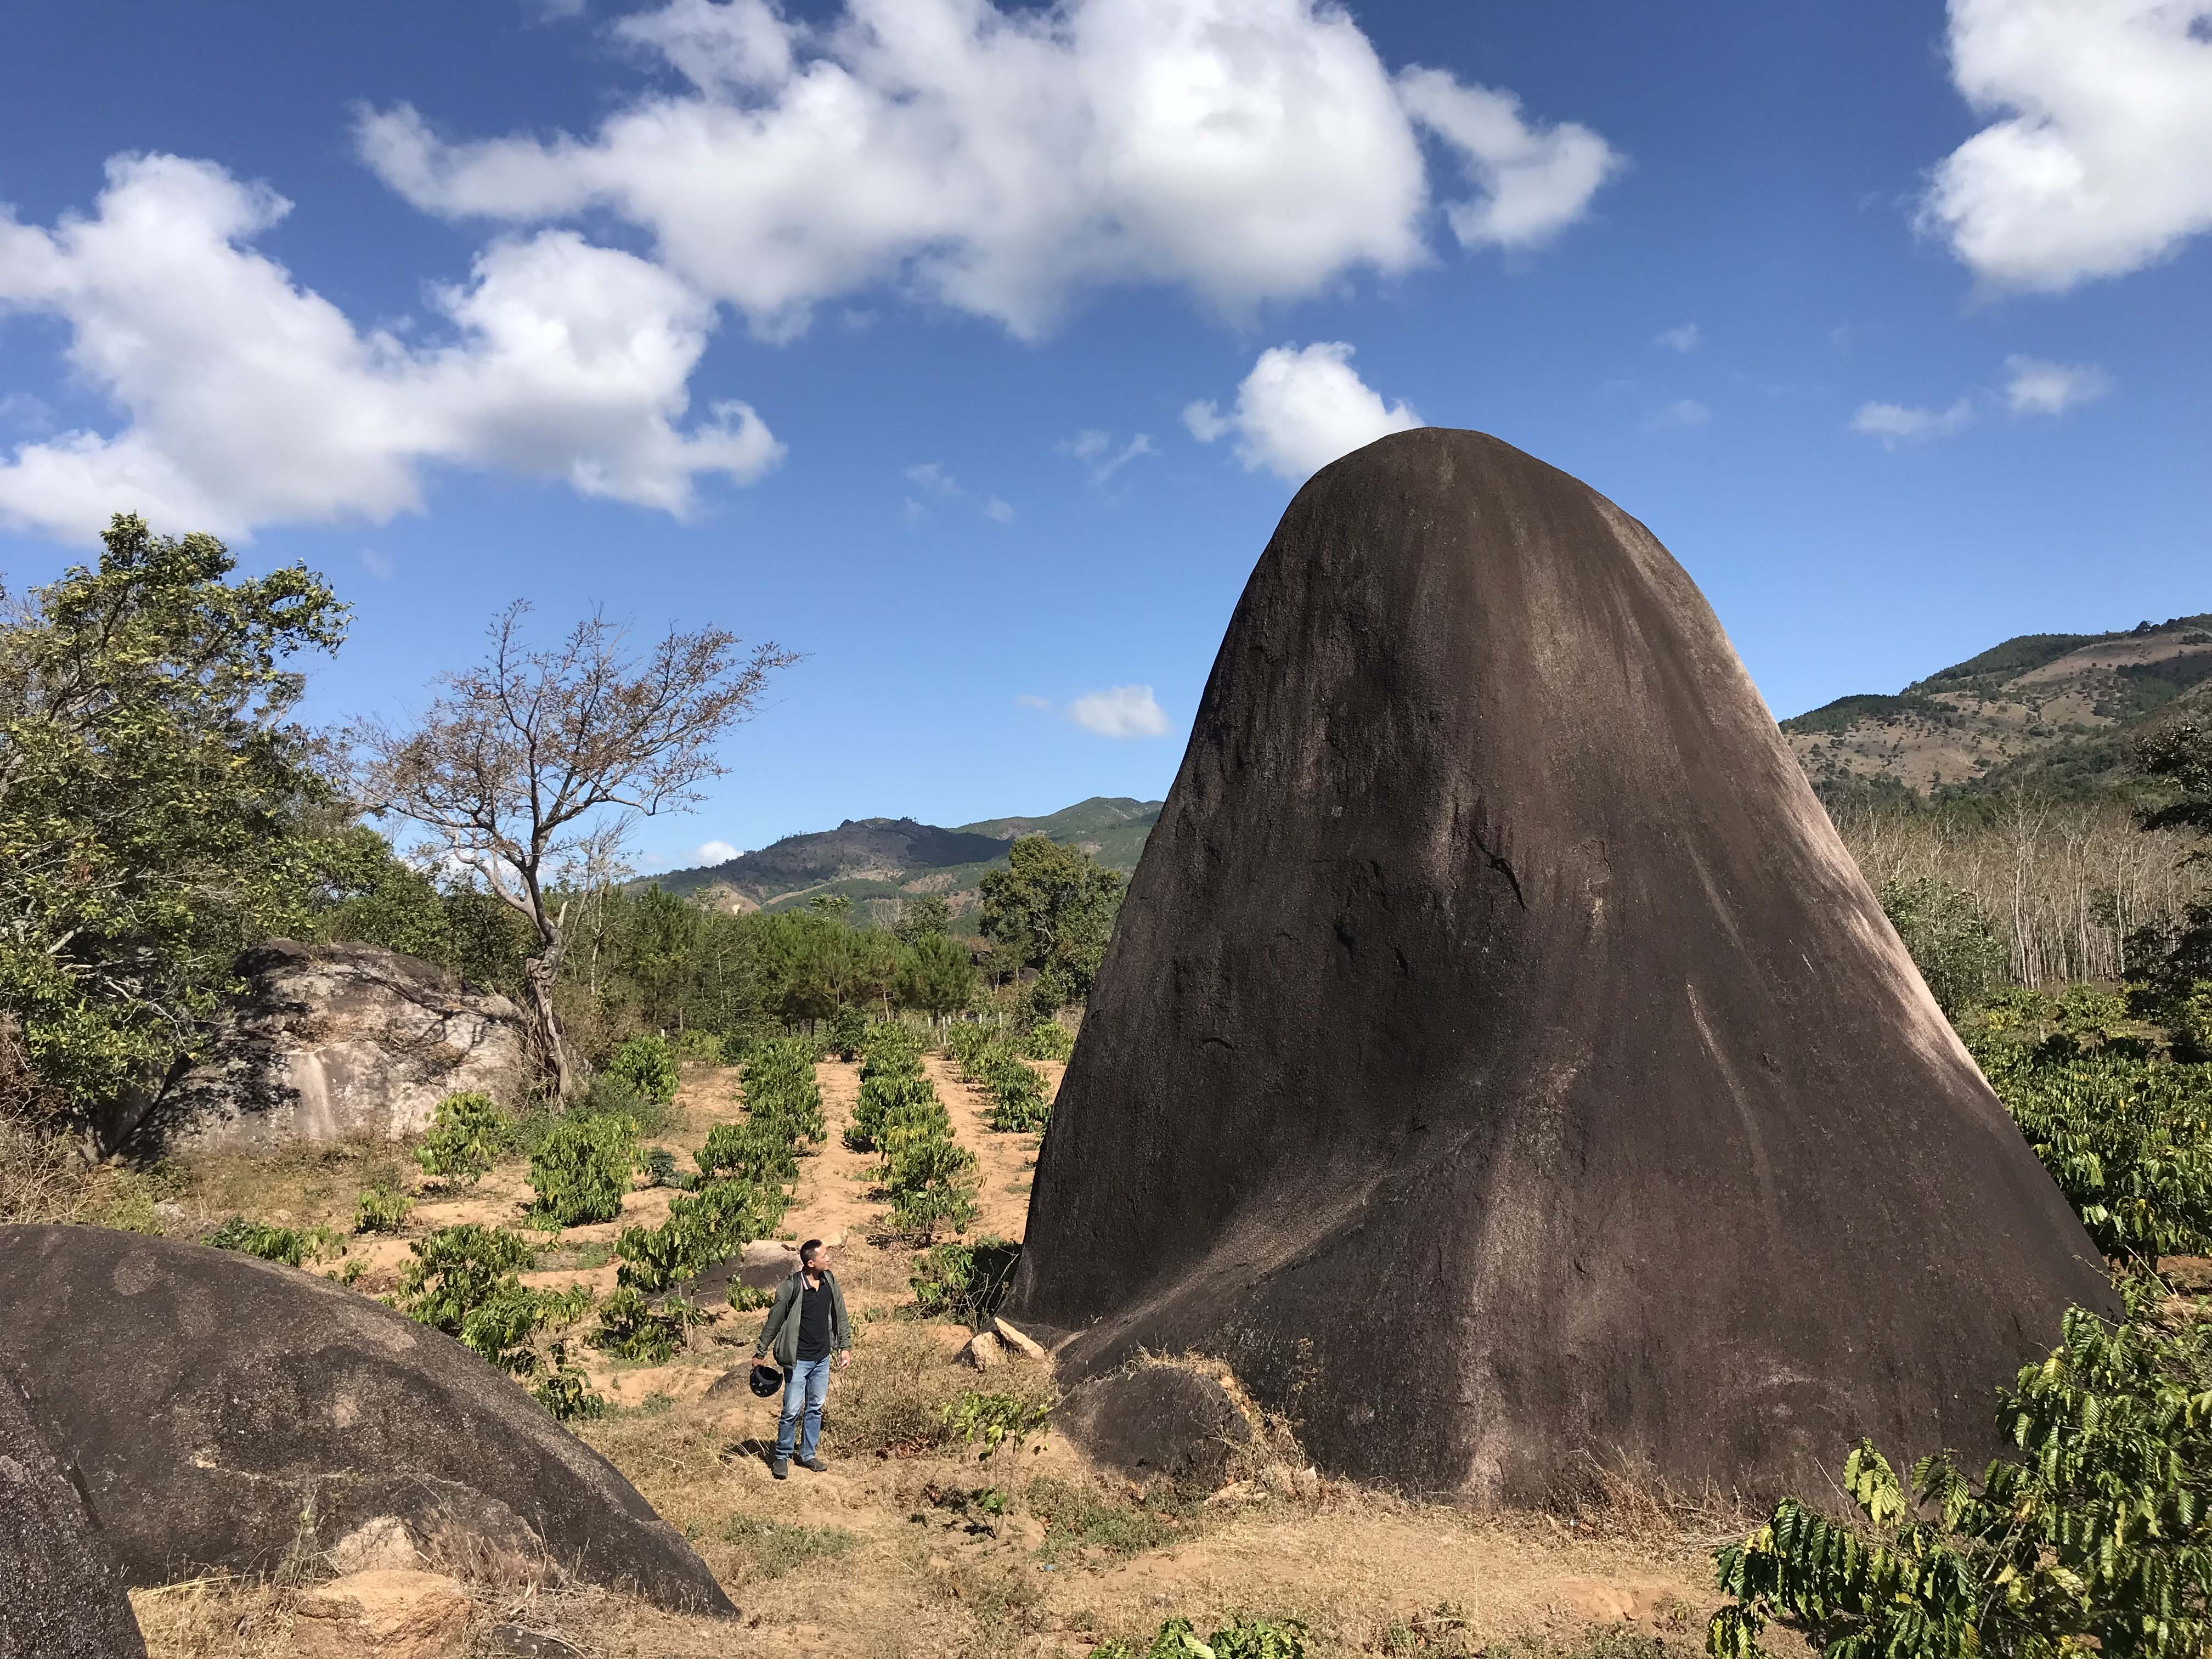 Một tảng đá với chiều cao khoảng 20 m sừng sững ở làng Ea Lũh. Ảnh: Lê Văn Ngọc